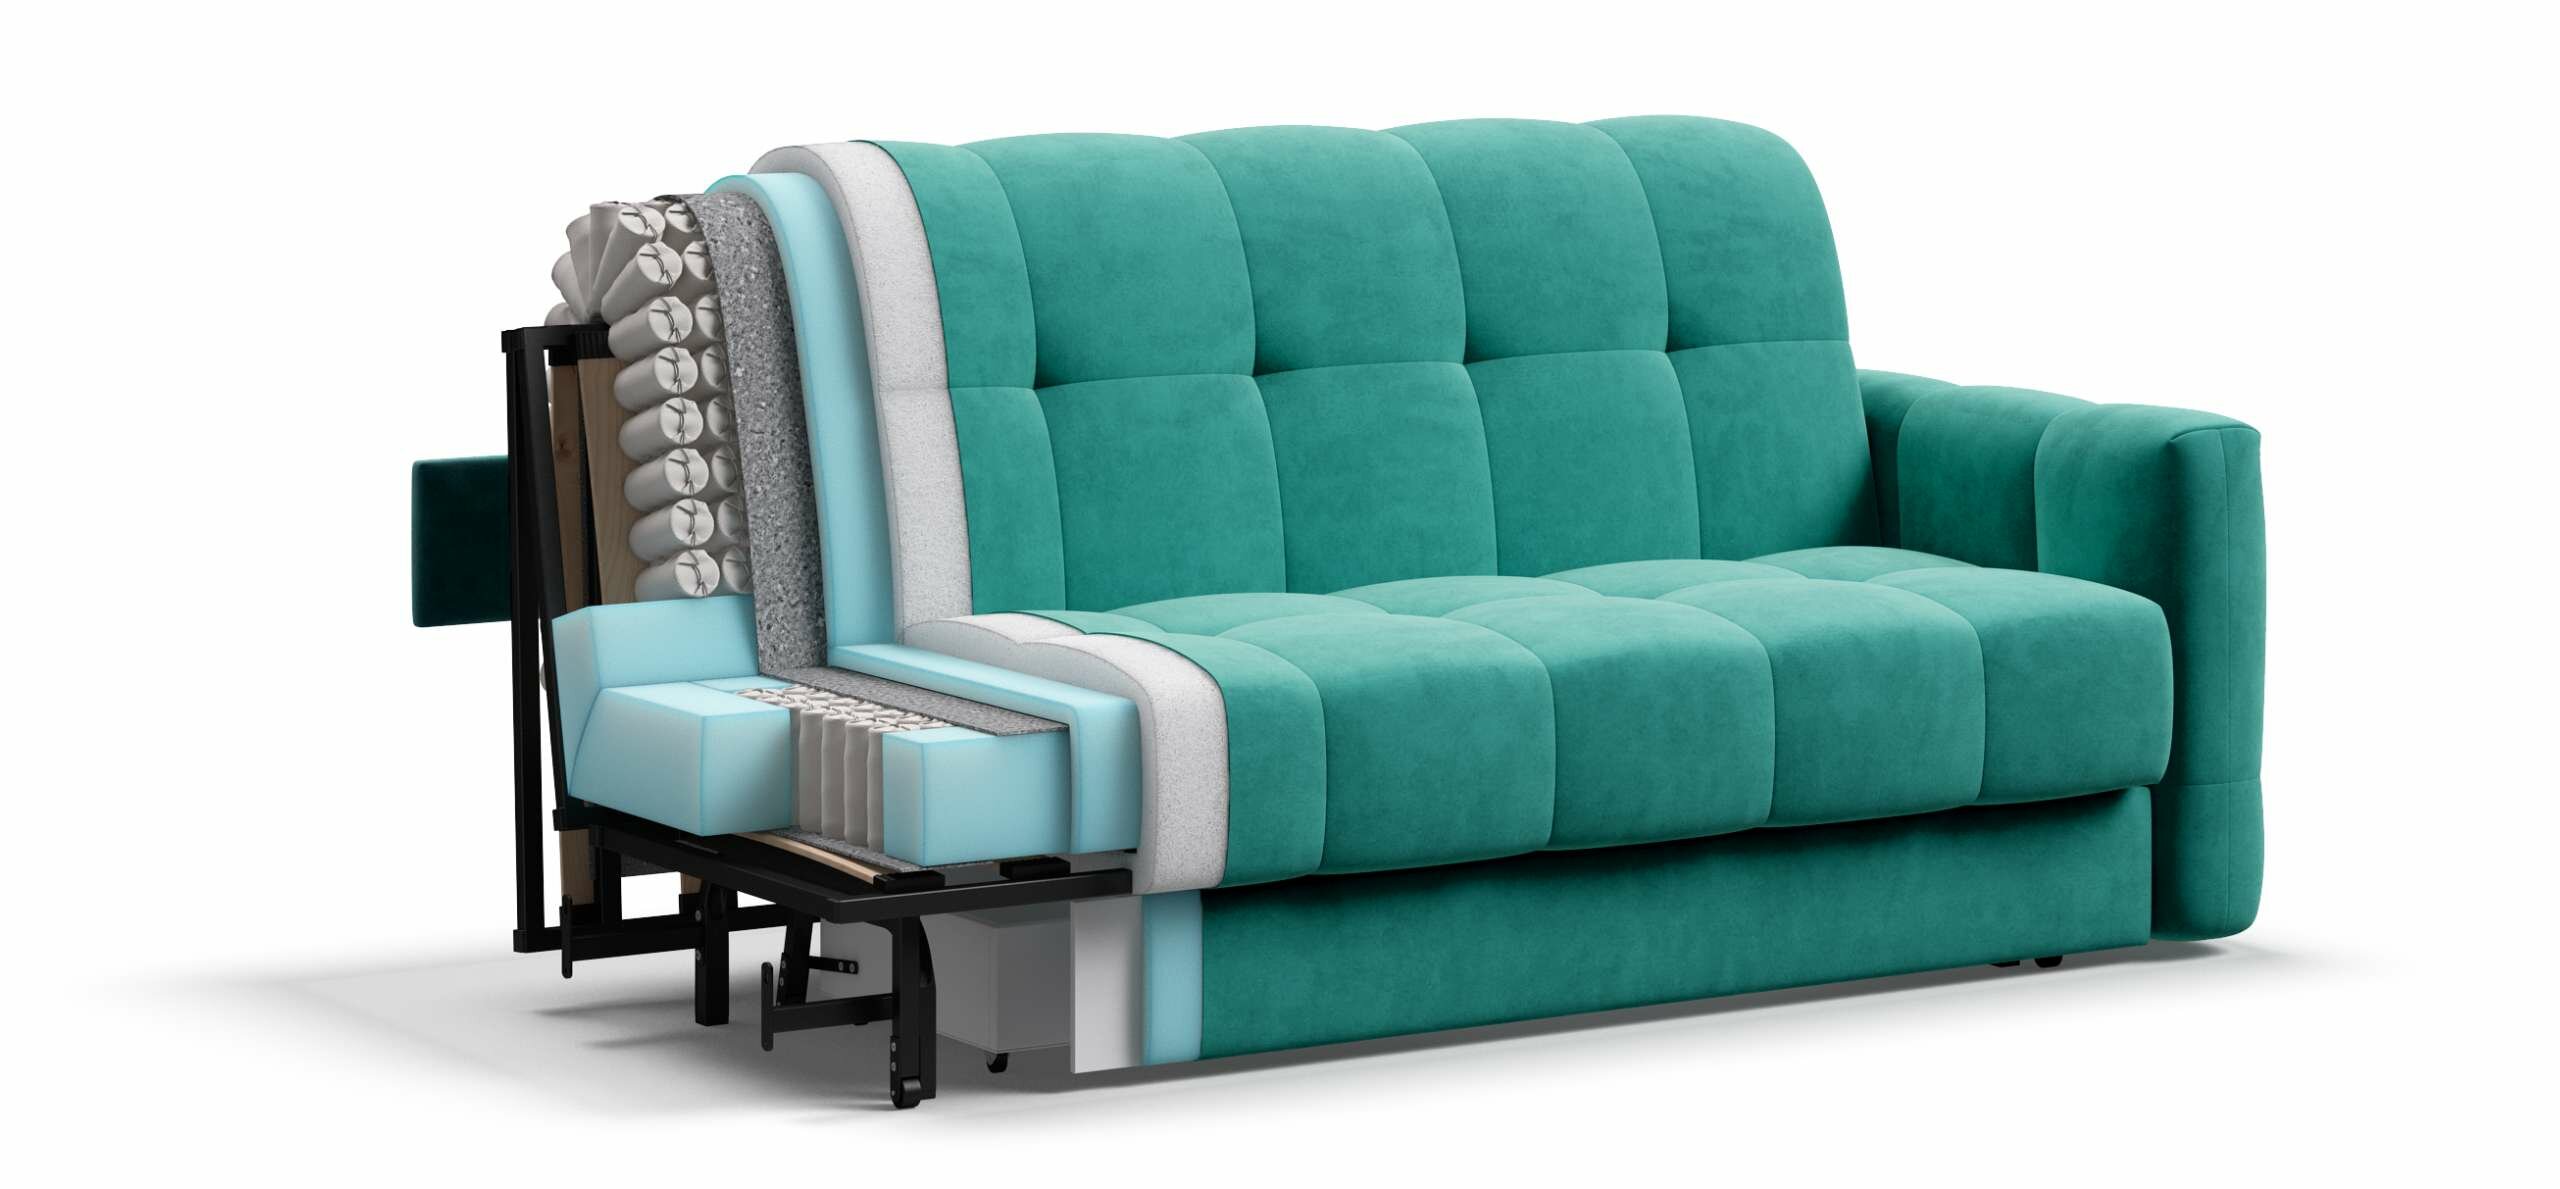 Выкатной диван-кровать с ящиком для хранения Boss Sleep 160, аккордеон, велюр Monolit аква, 203x119x91 см - фотография № 6